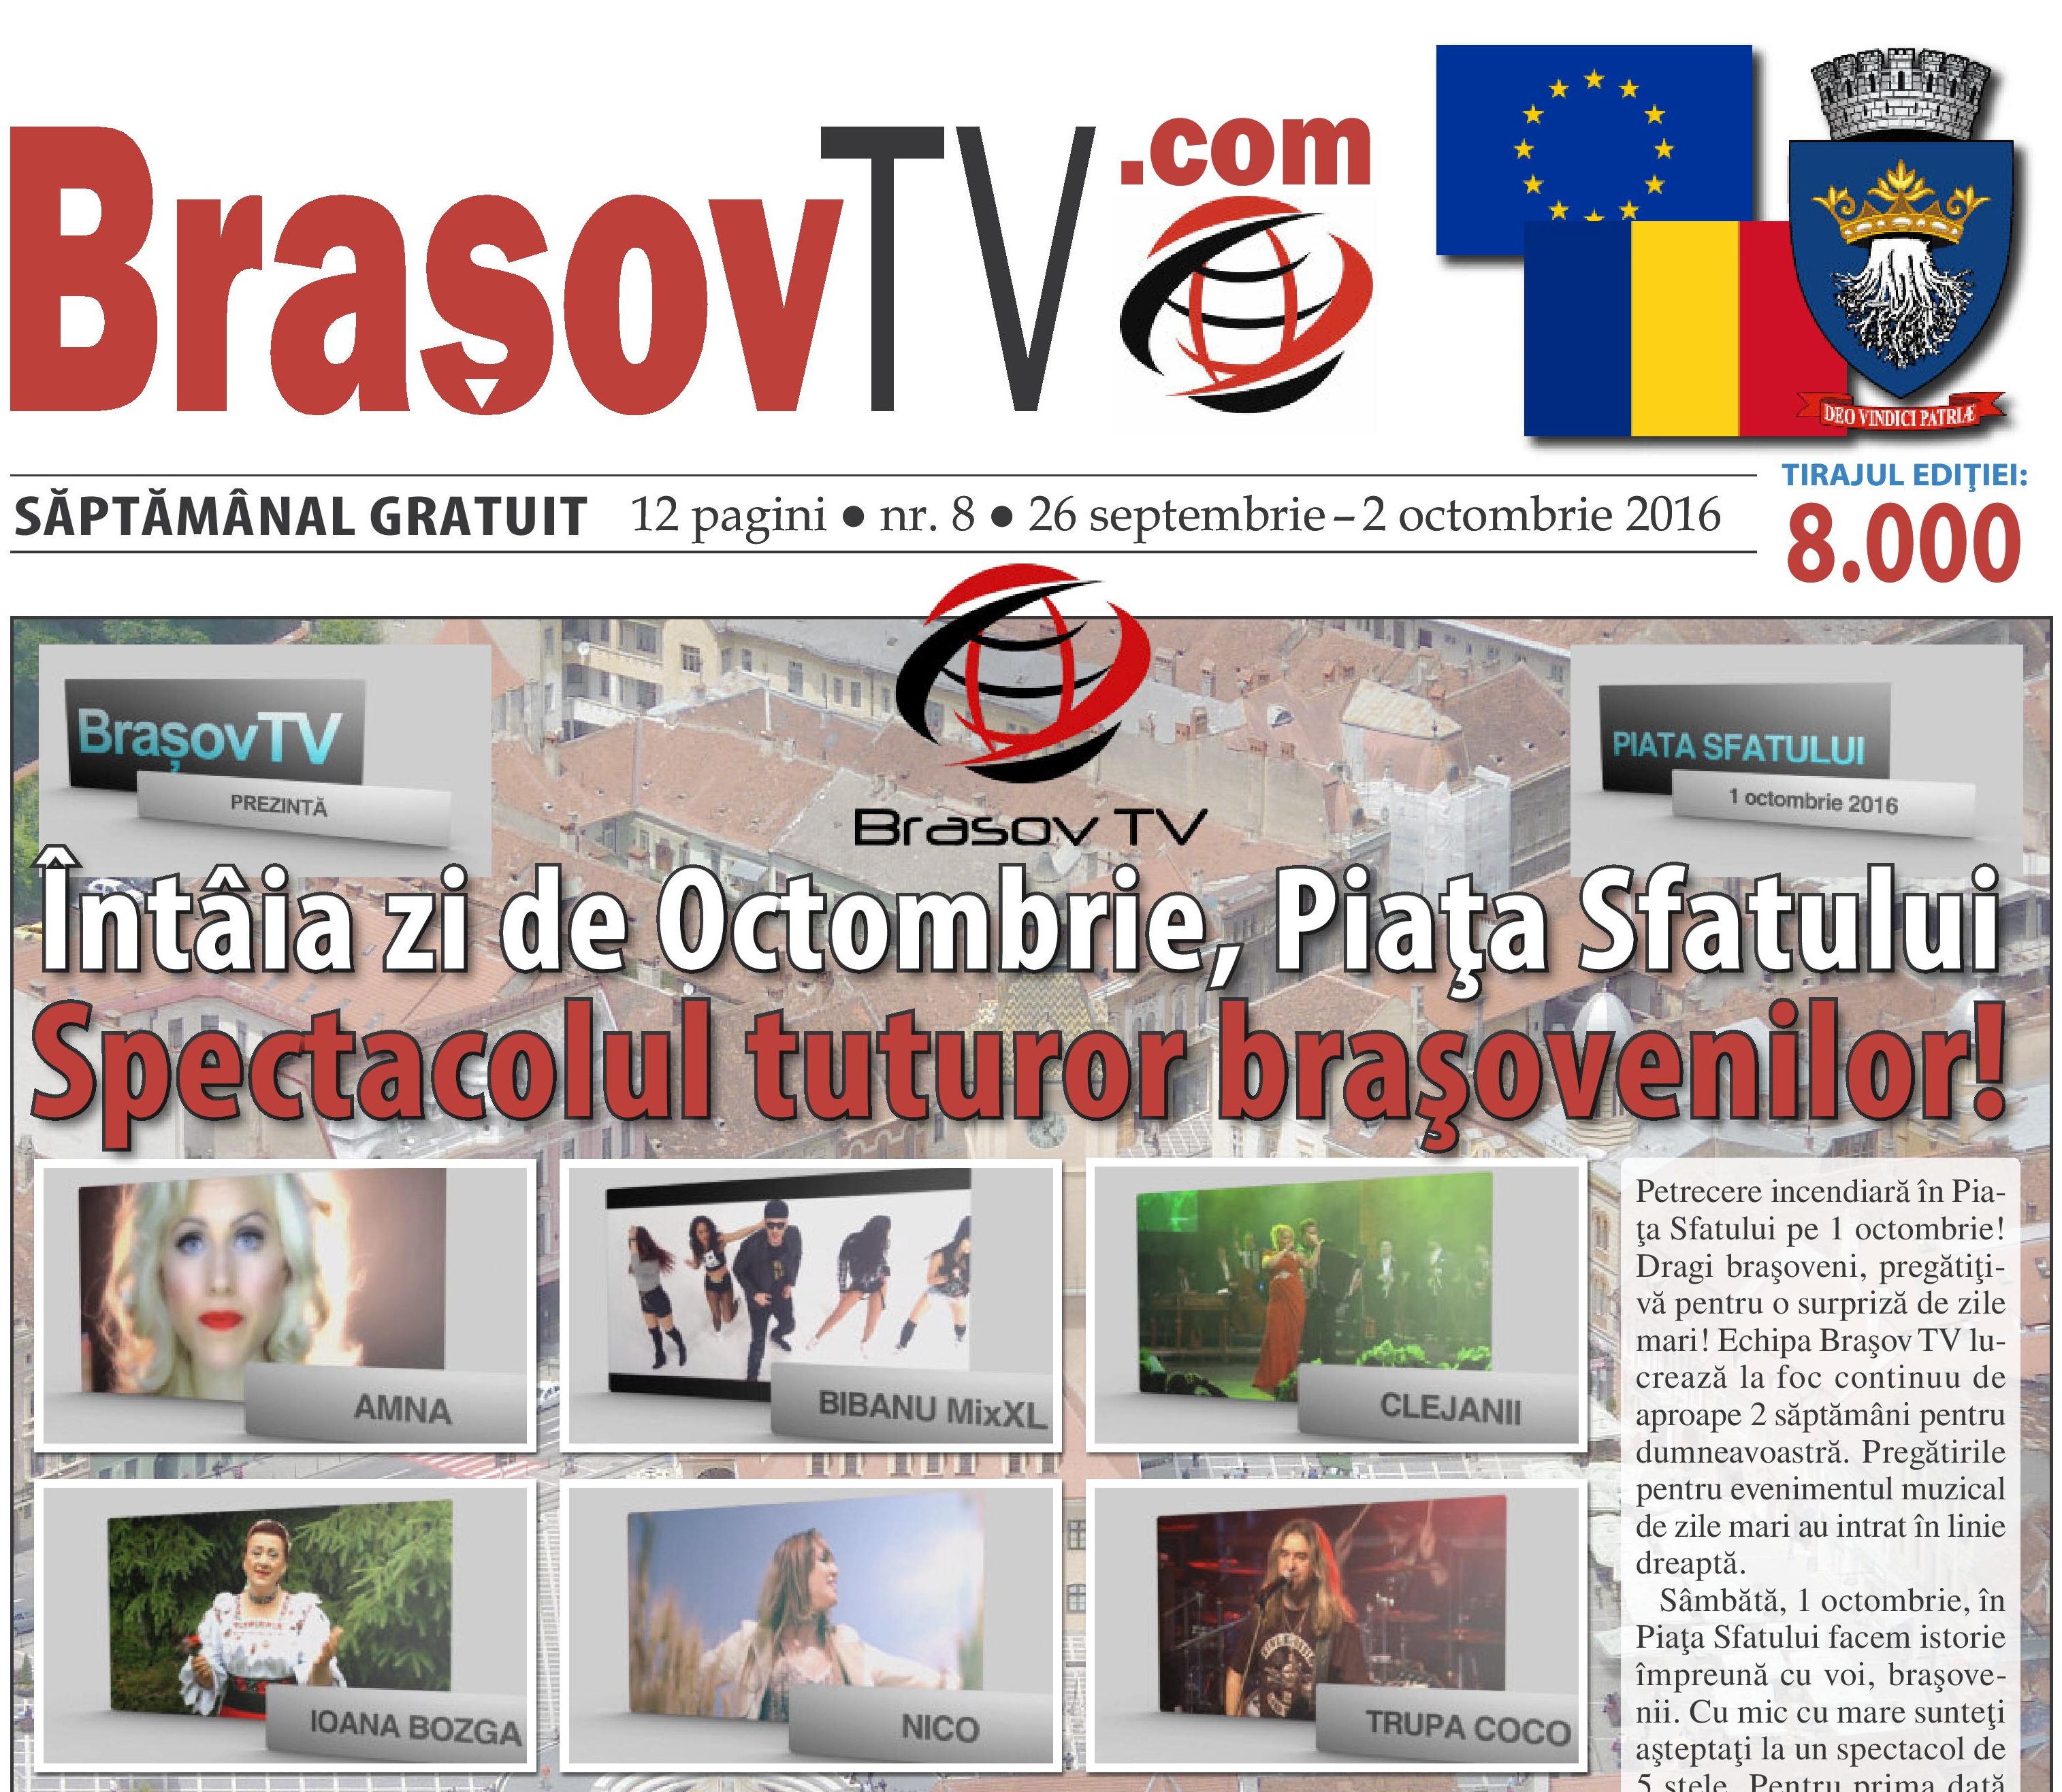 BrasovTv.com